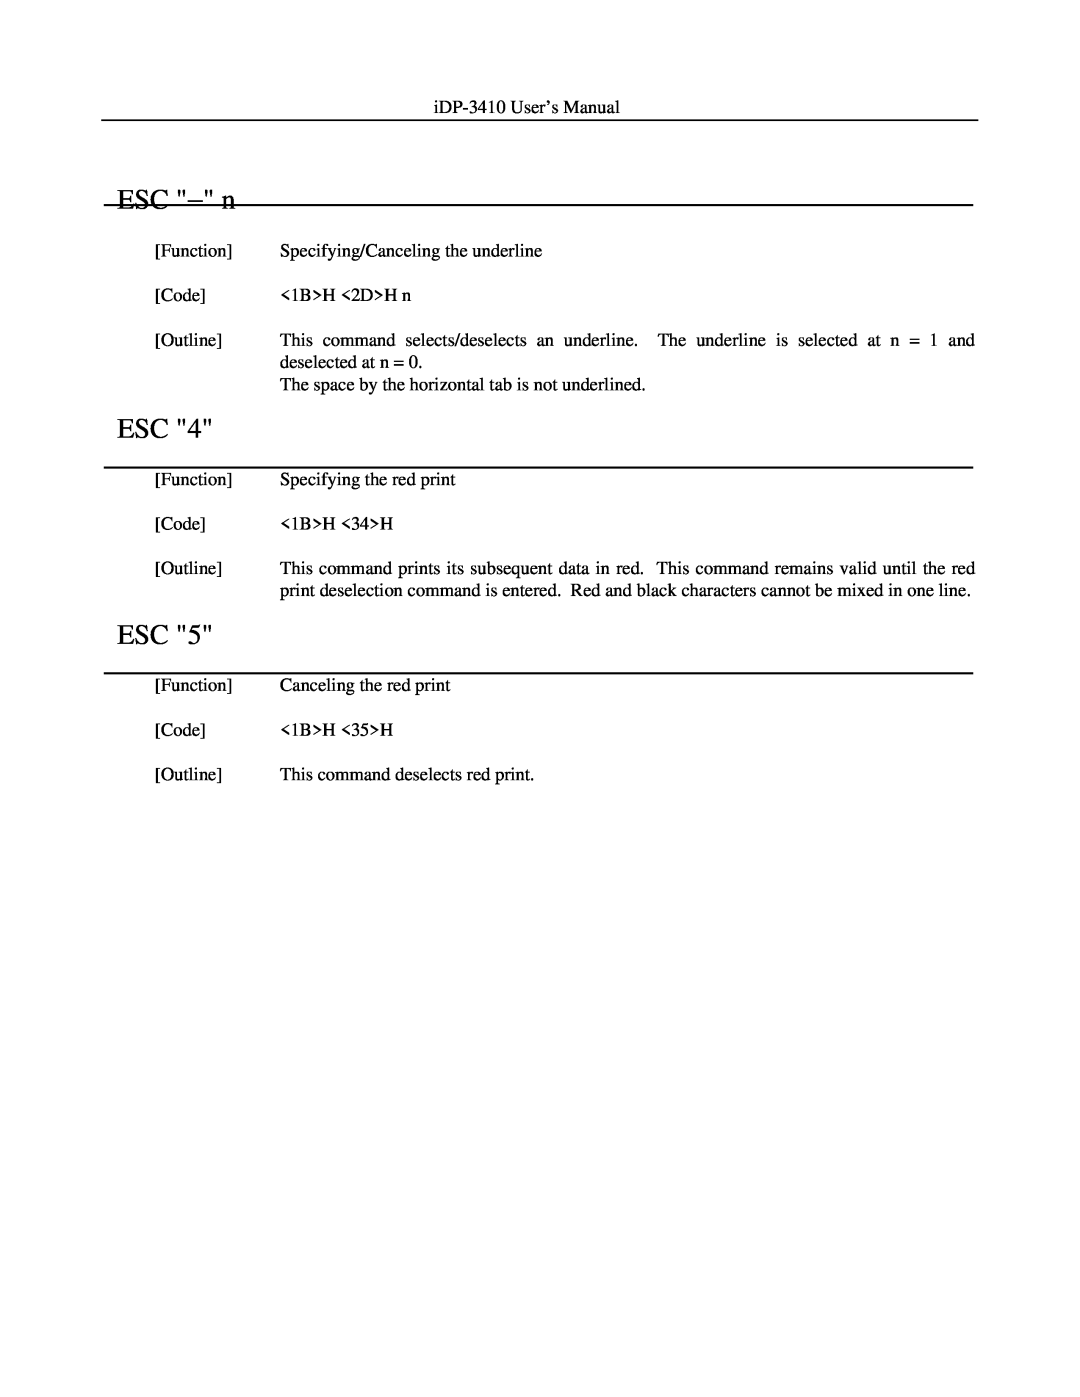 Addlogix iDP-3410 user manual ESC − n 